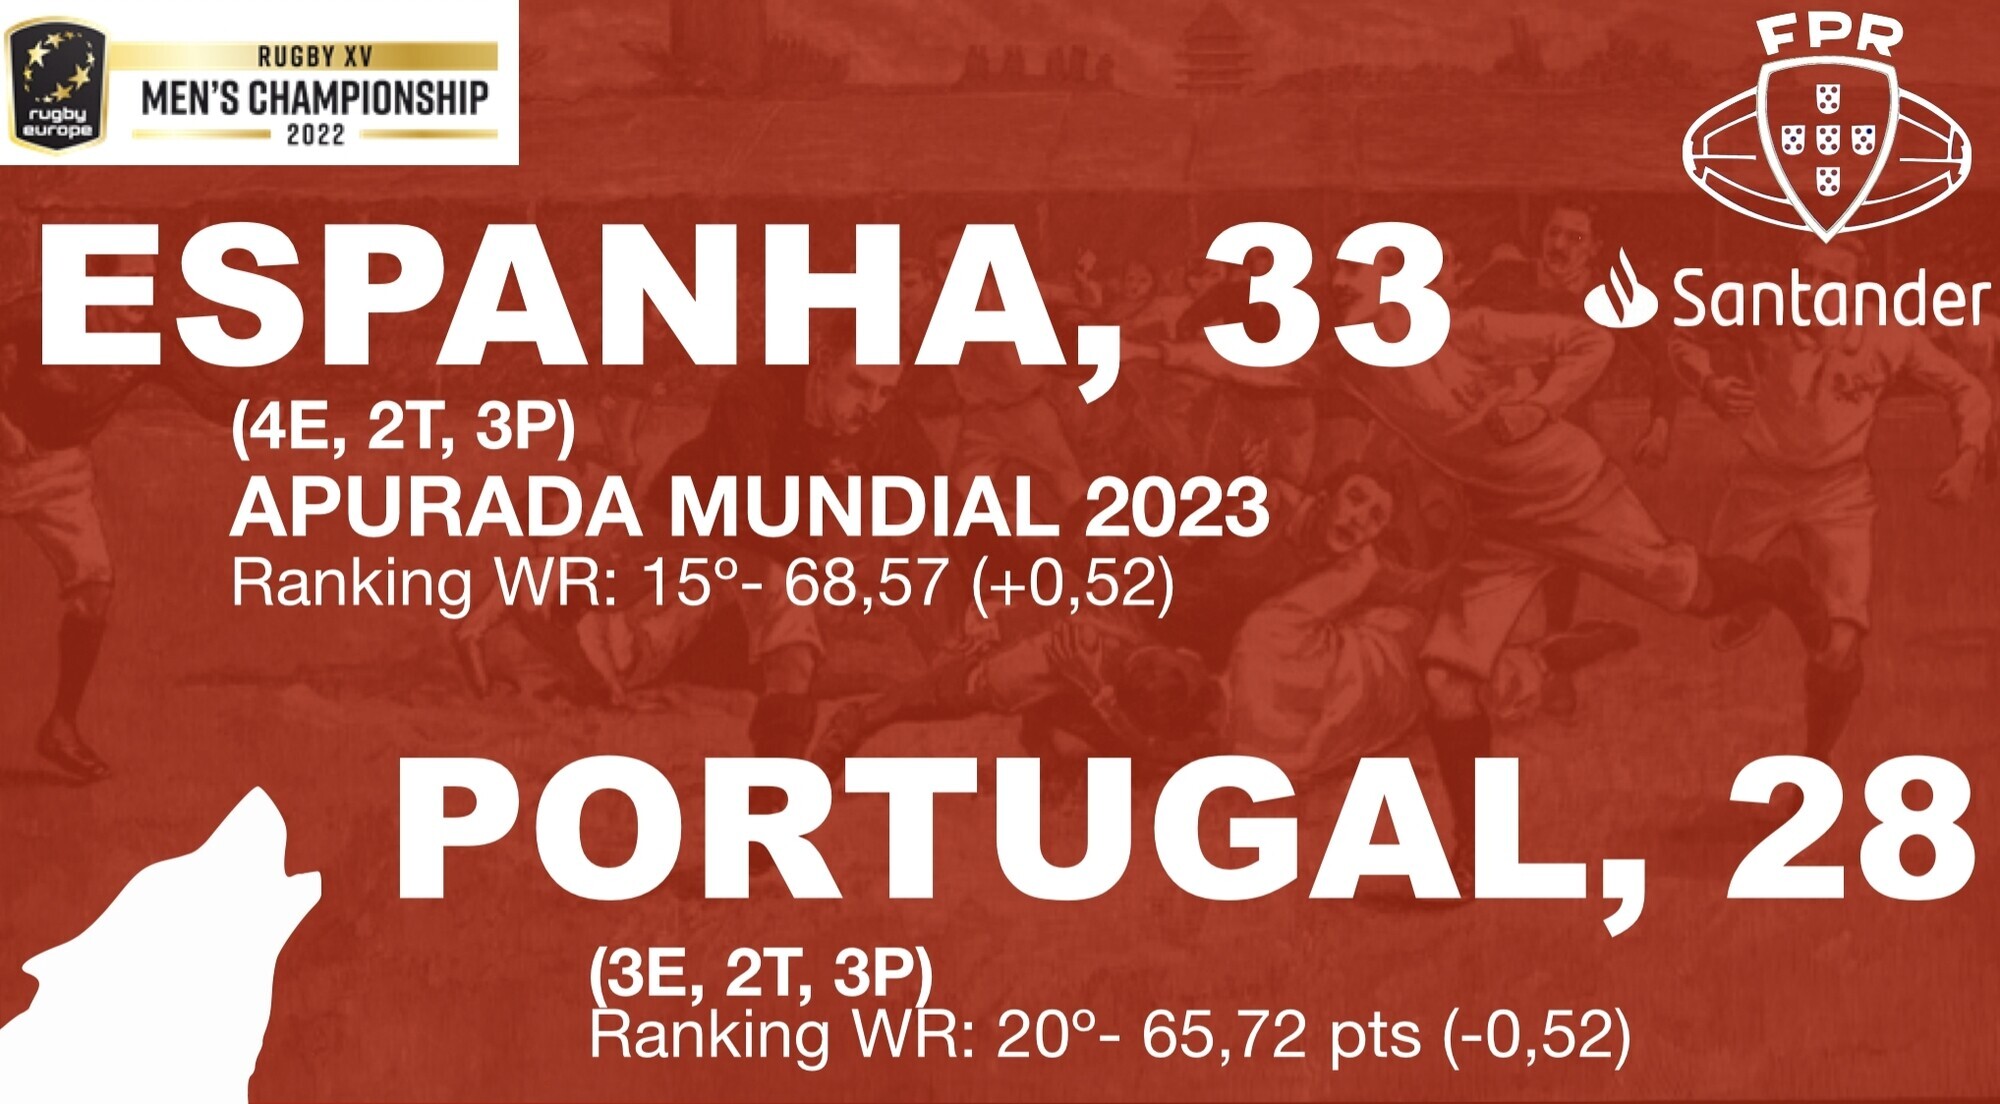 PORTUGAL RUGBY - ESPANHA APURADA PARA O MUNDIAL 2023